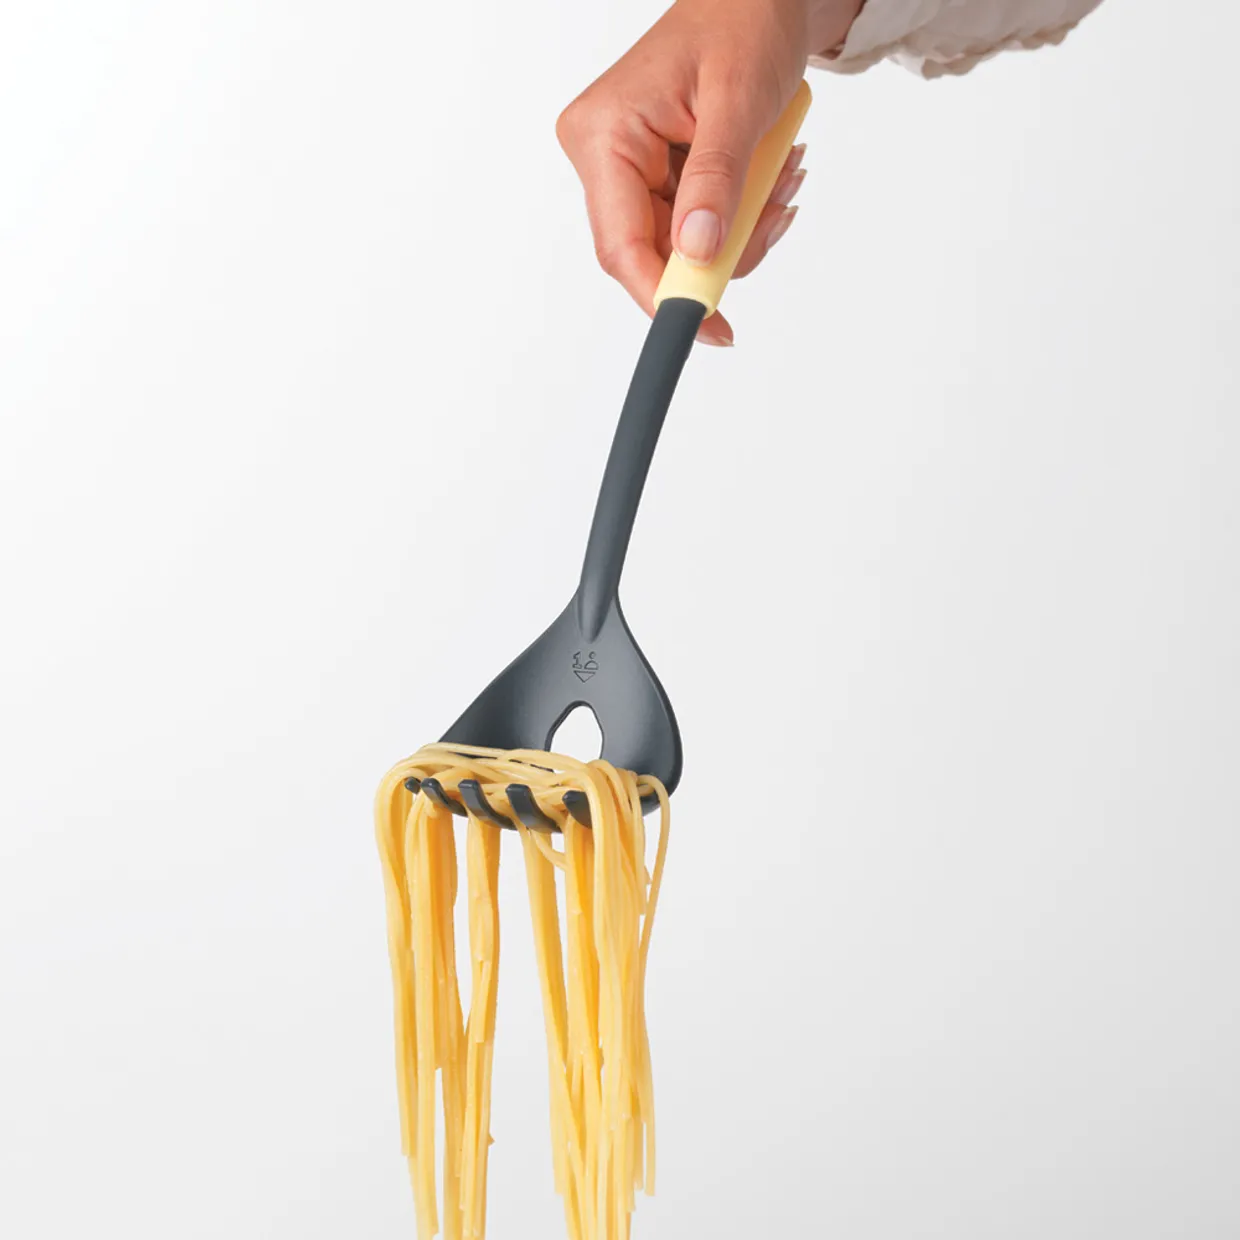 Spaghettilepel plus -maatje, TASTY+ - Vanilla Yellow